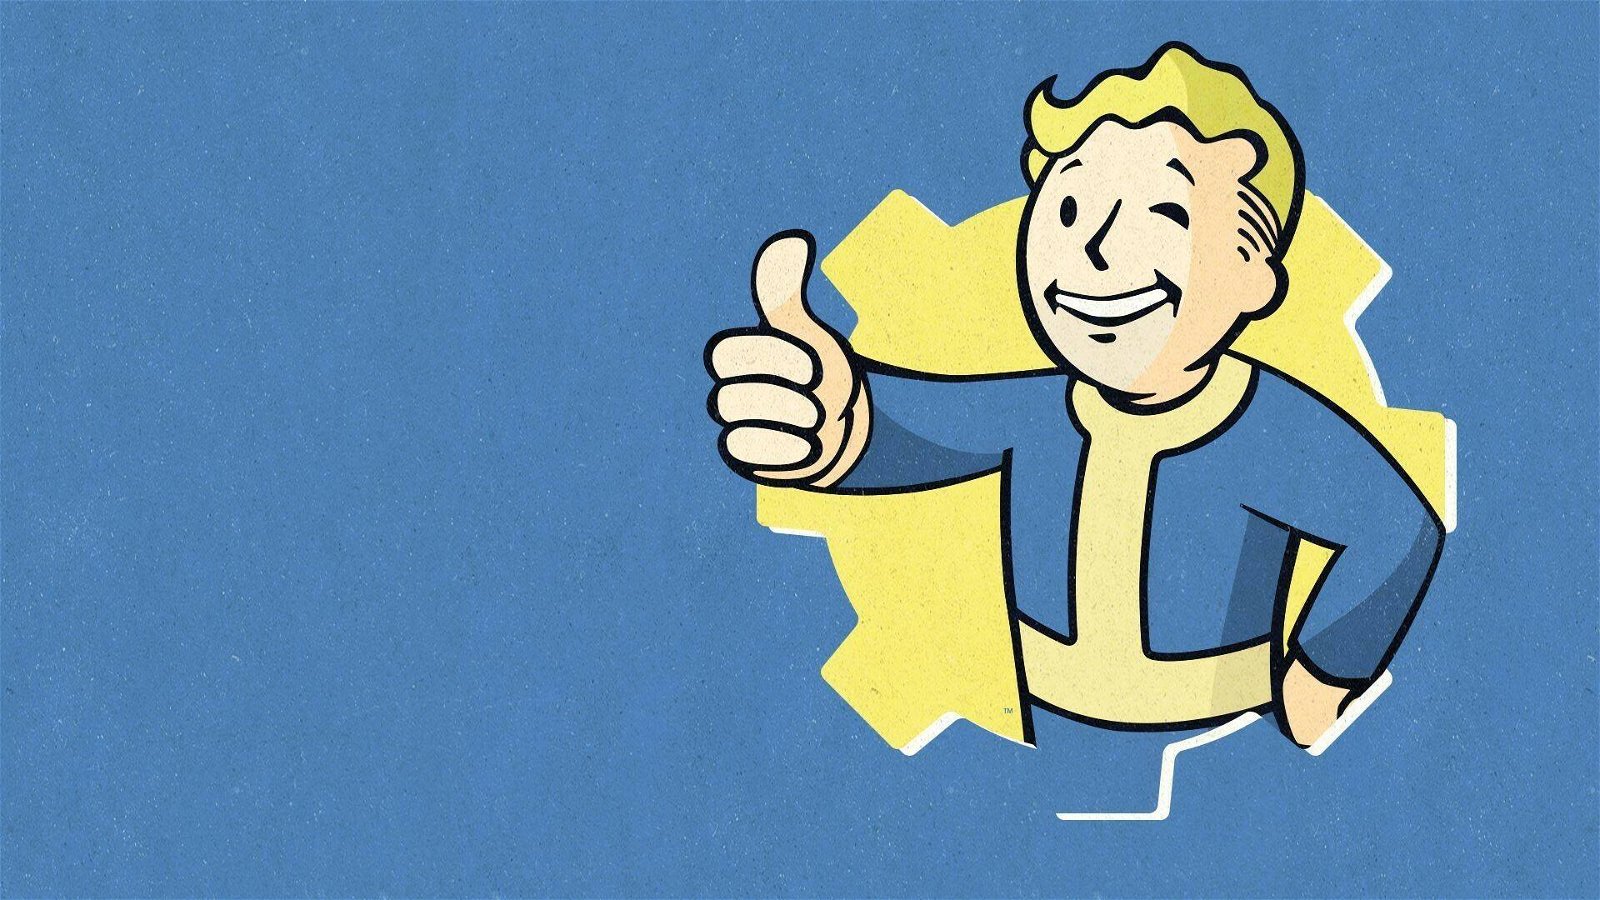 Fallout serie TV, gli autori vuotano il sacco: "sarà fuori di testa"